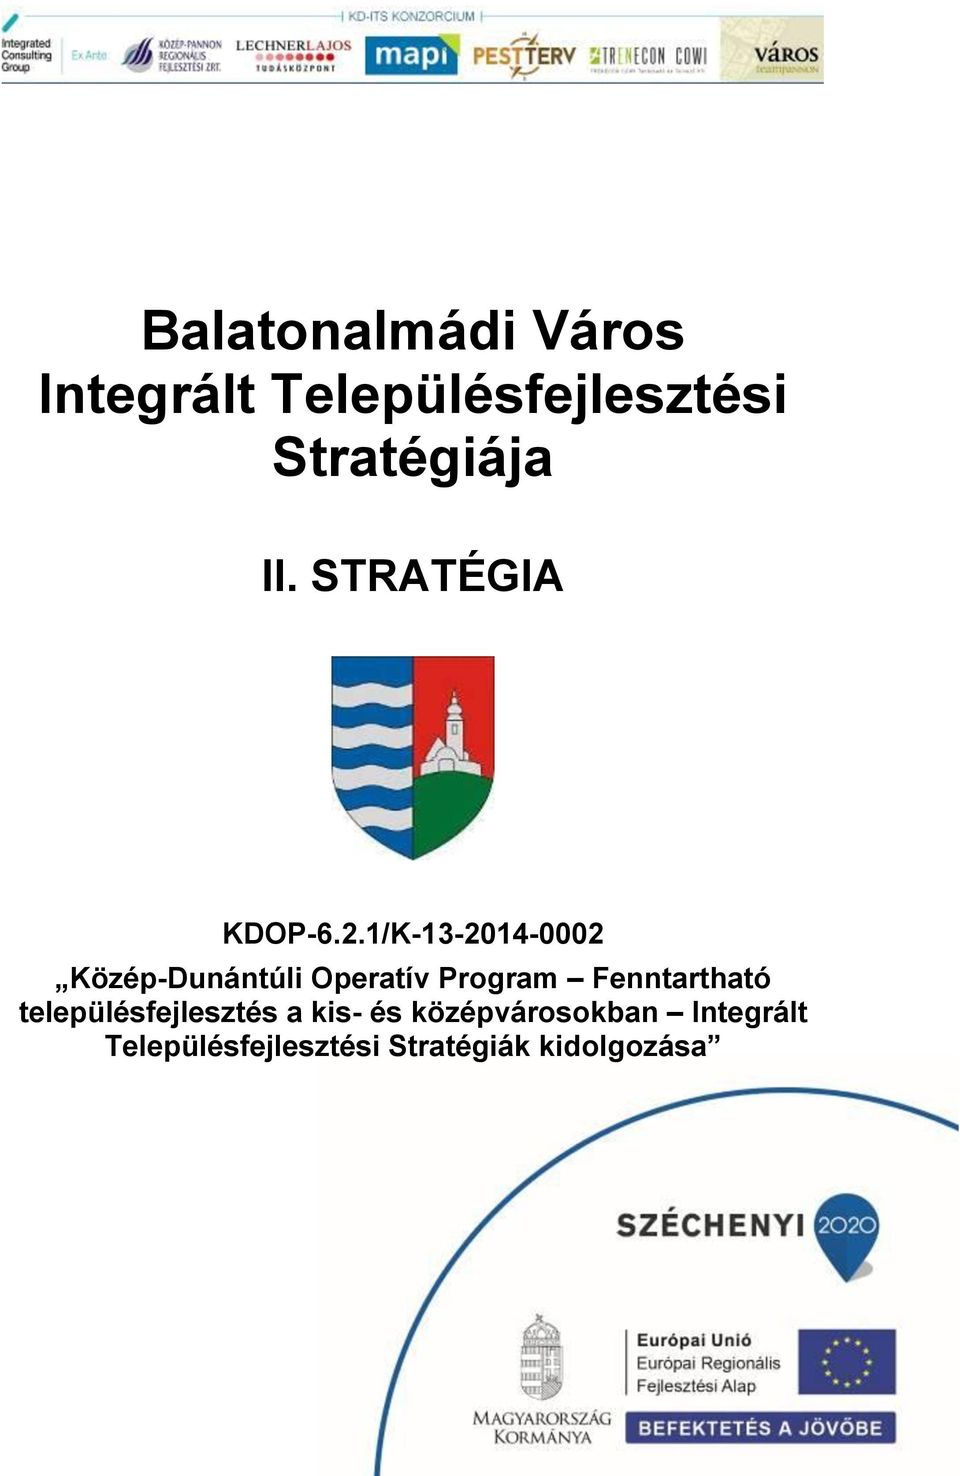 1/K-13-2014-0002 Közép-Dunántúli Operatív Program